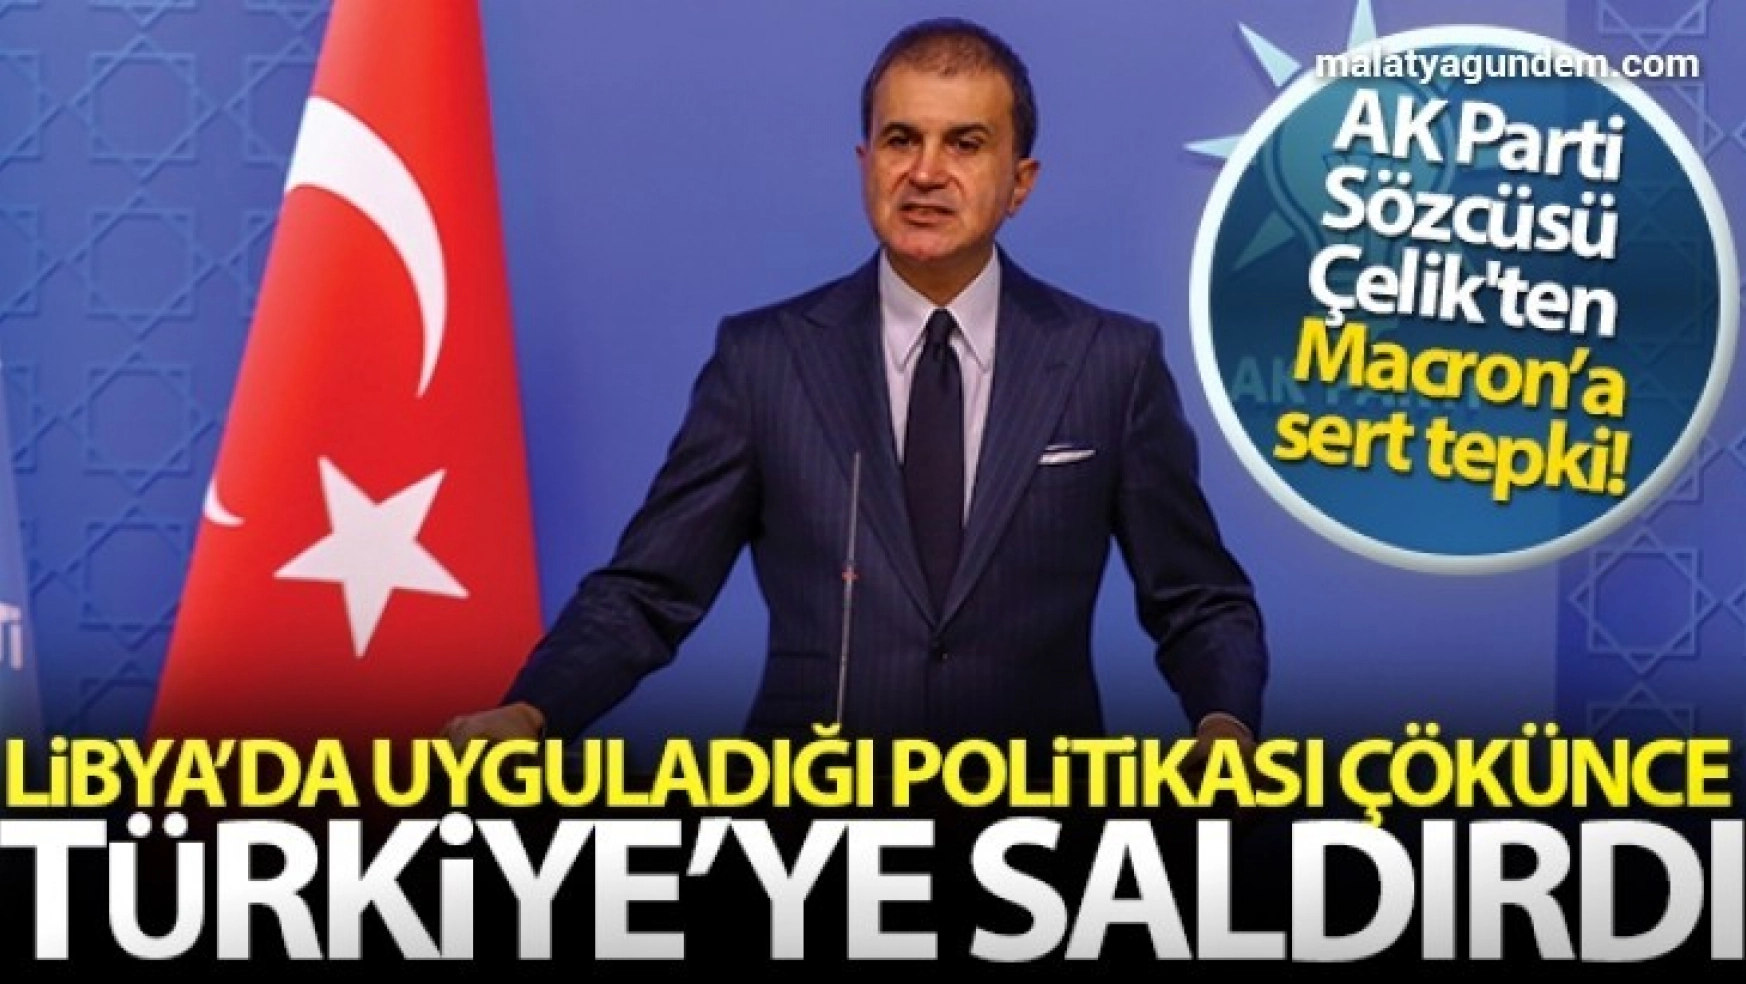 AK Parti Sözcüsü Ömer Çelik'ten önemli açıklamalar!